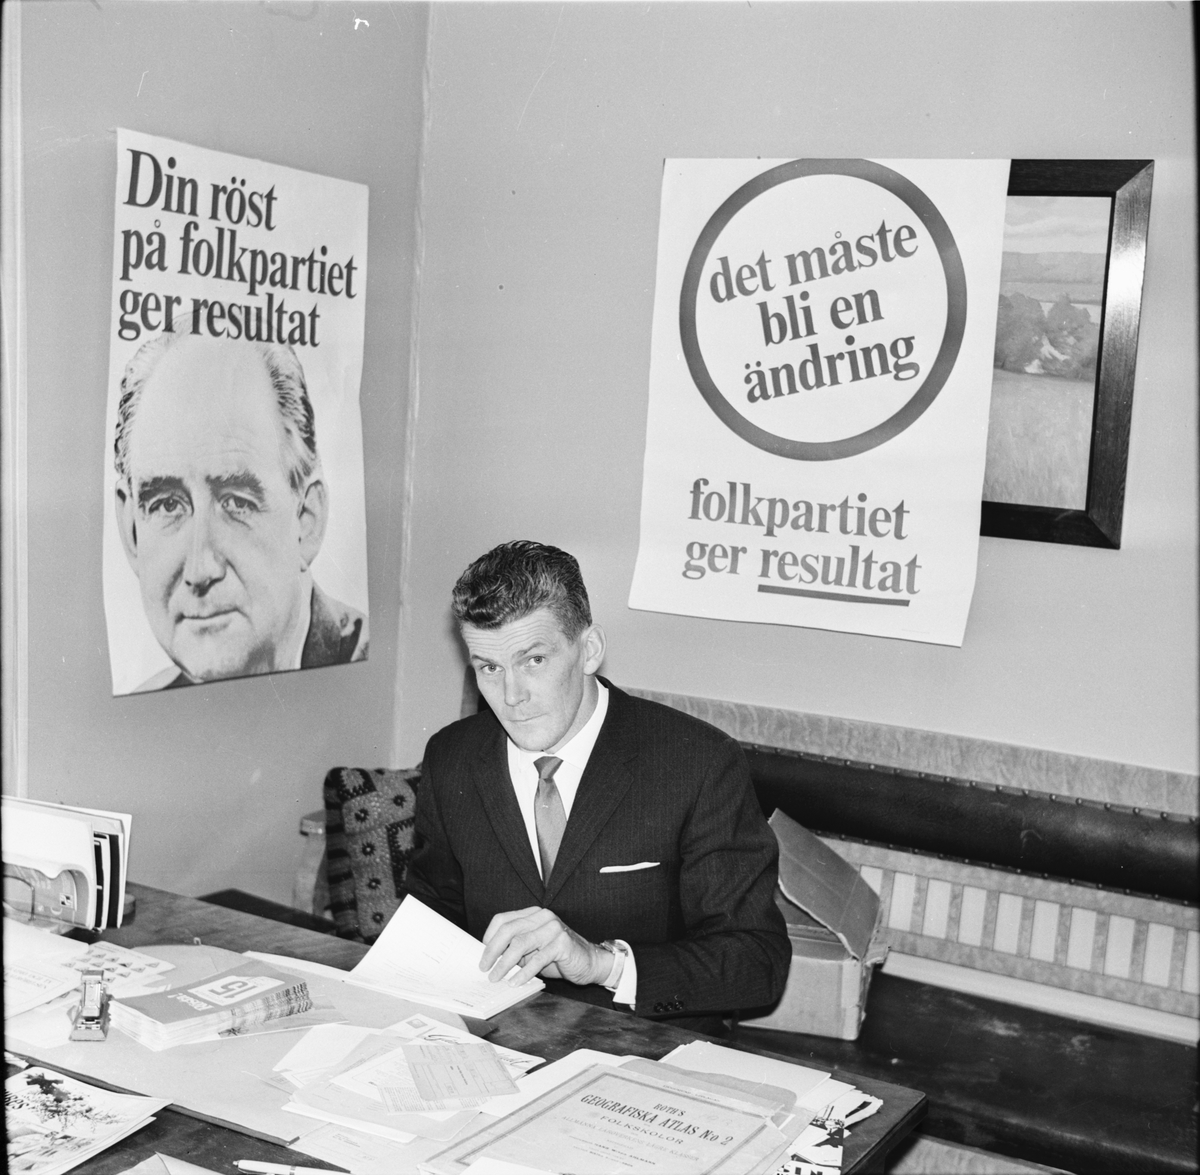 Arbrå. Valet
1968